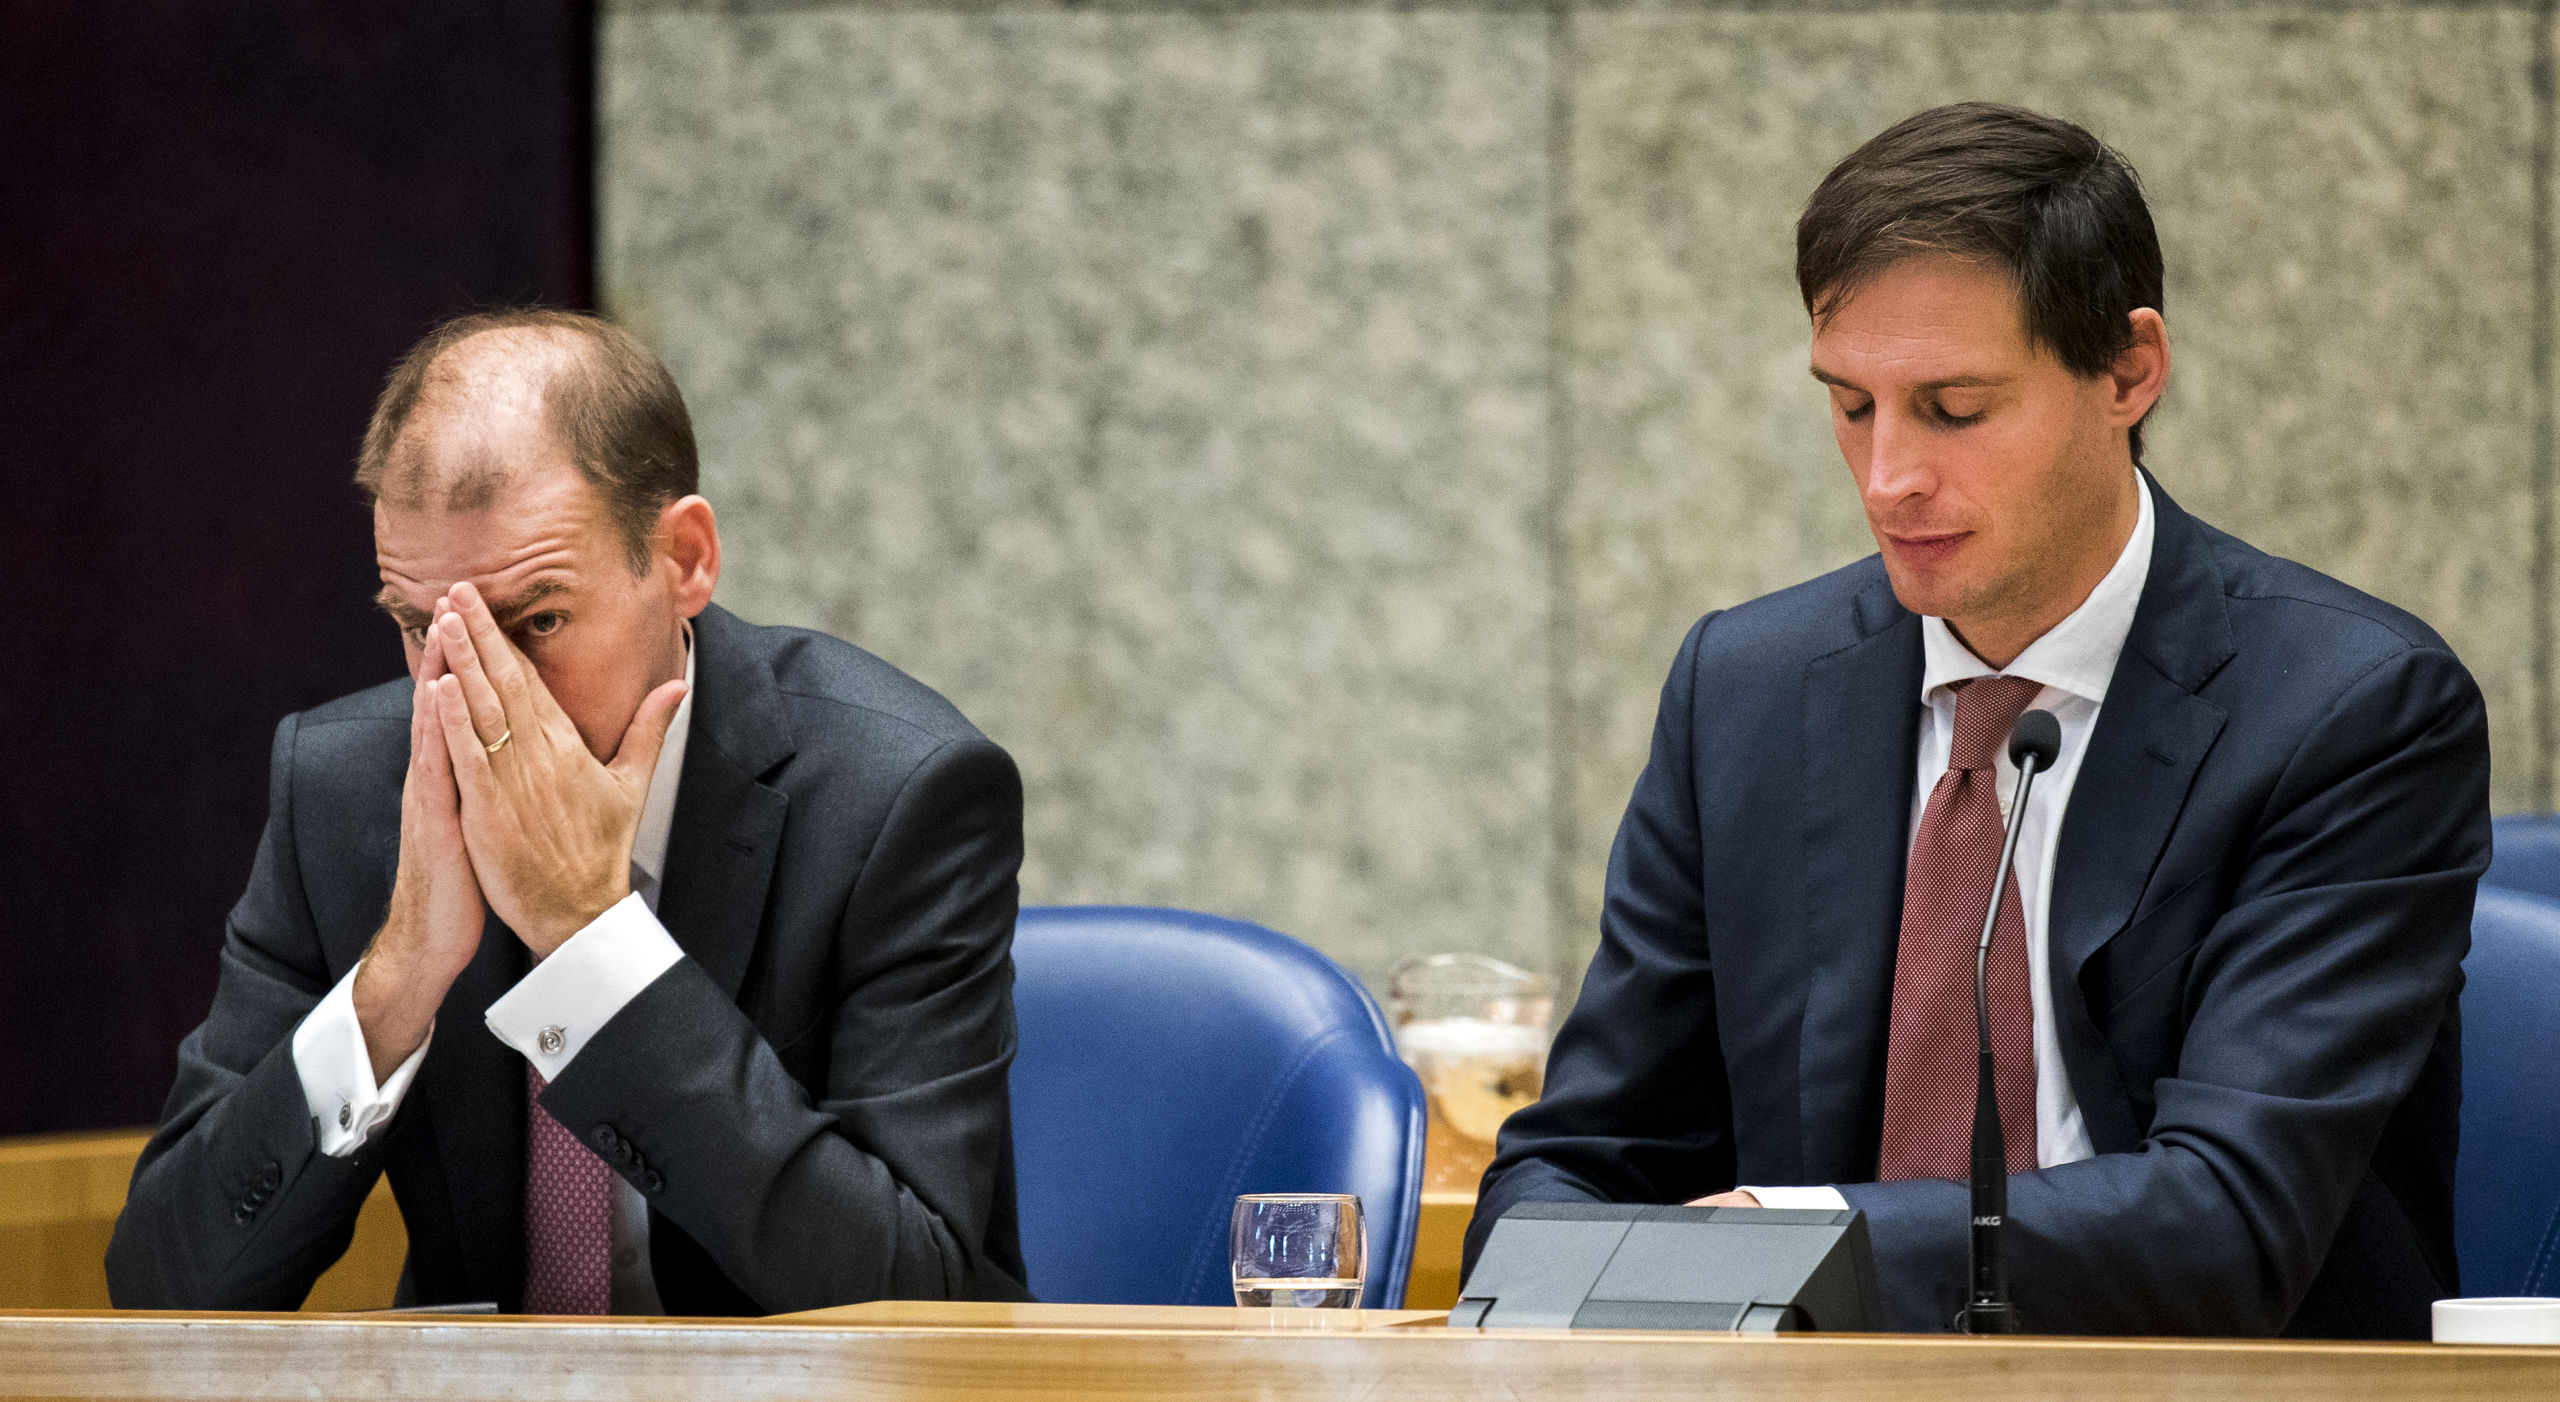 Staatssecretaris Menno Snel (D66) en Minister Wopke Hoekstra (CDA) van Financiën tijdens de Algemene Financiële Beschouwingen in de Tweede Kamer.